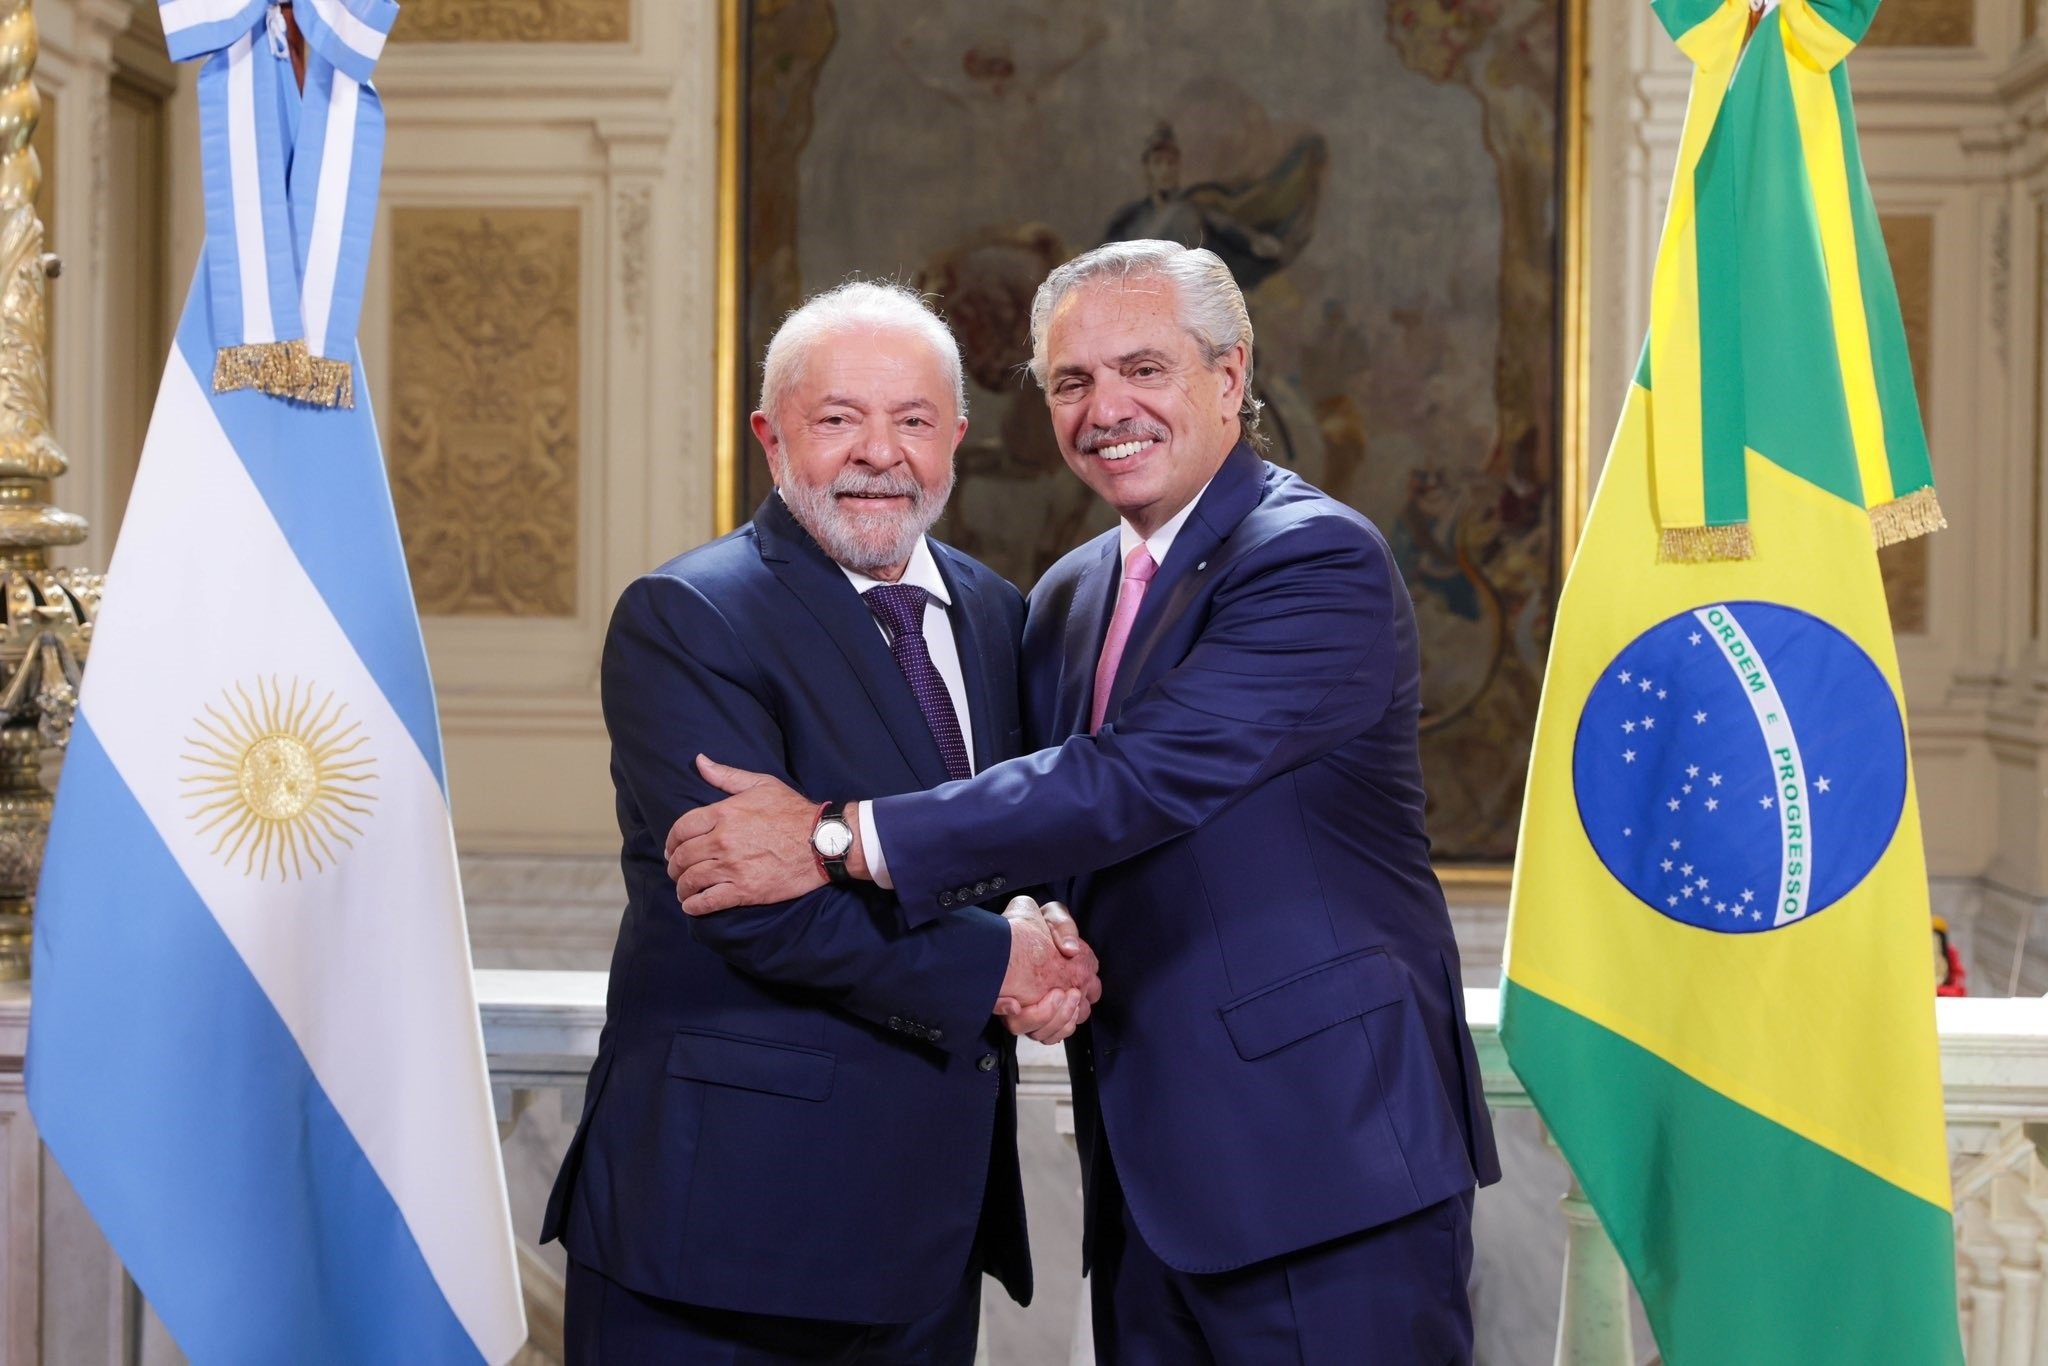 Los baches del ‘euro latinoamericano’ al que aspiran Brasil y Argentina